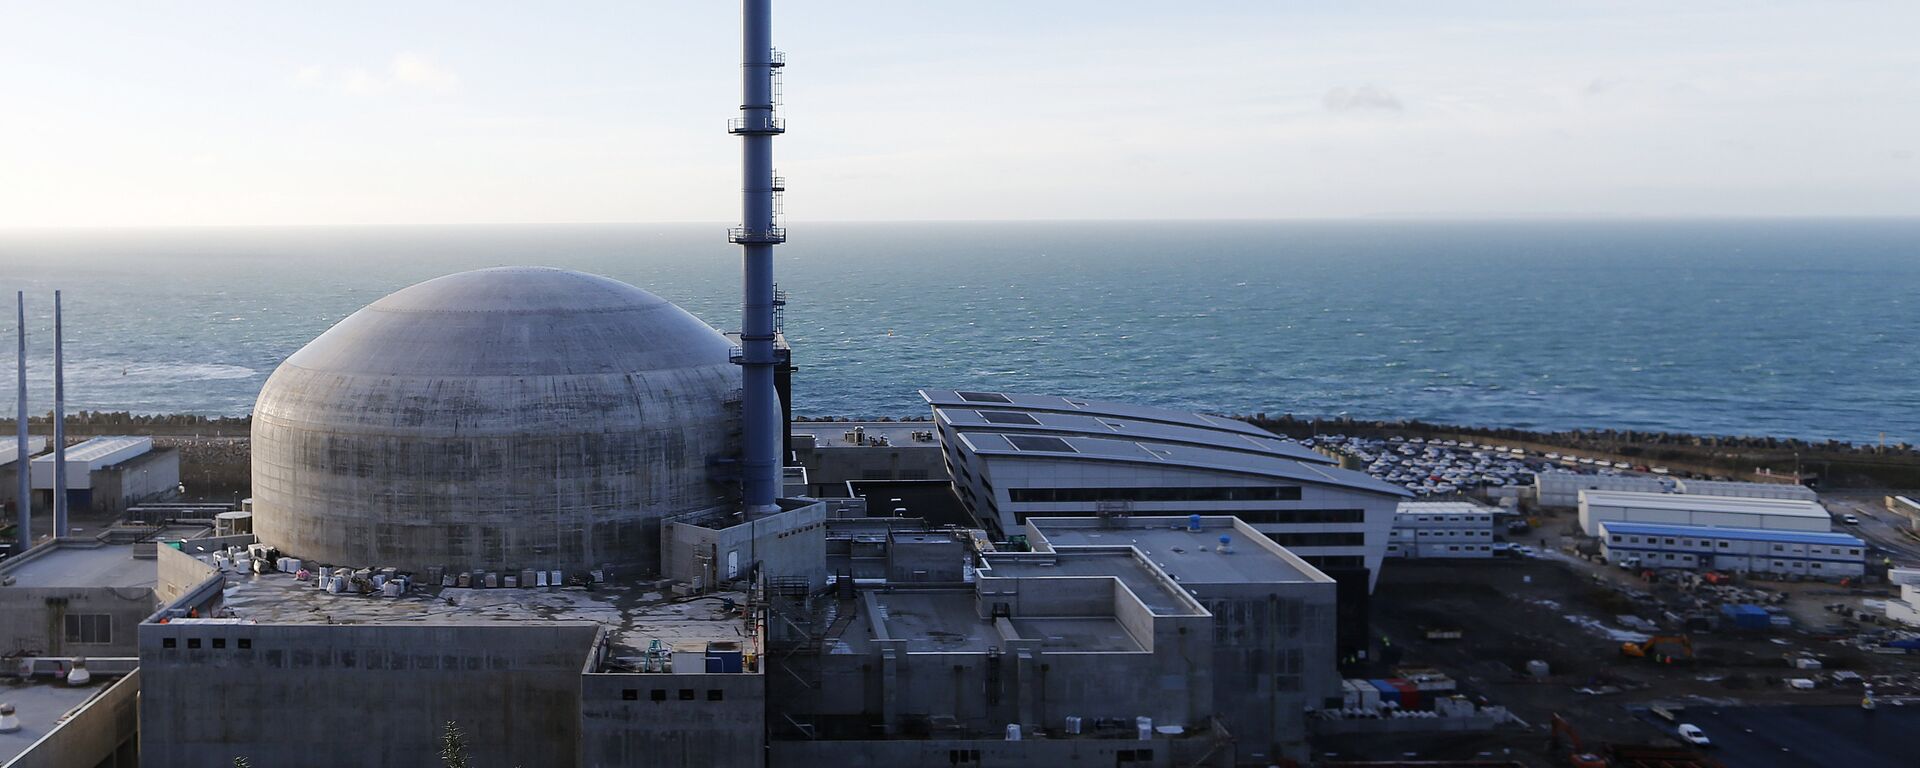 Vue générale de la construction du réacteur européen à eau sous pression (EPR) de troisième génération à Flamanville, France. - Sputnik Afrique, 1920, 09.03.2021